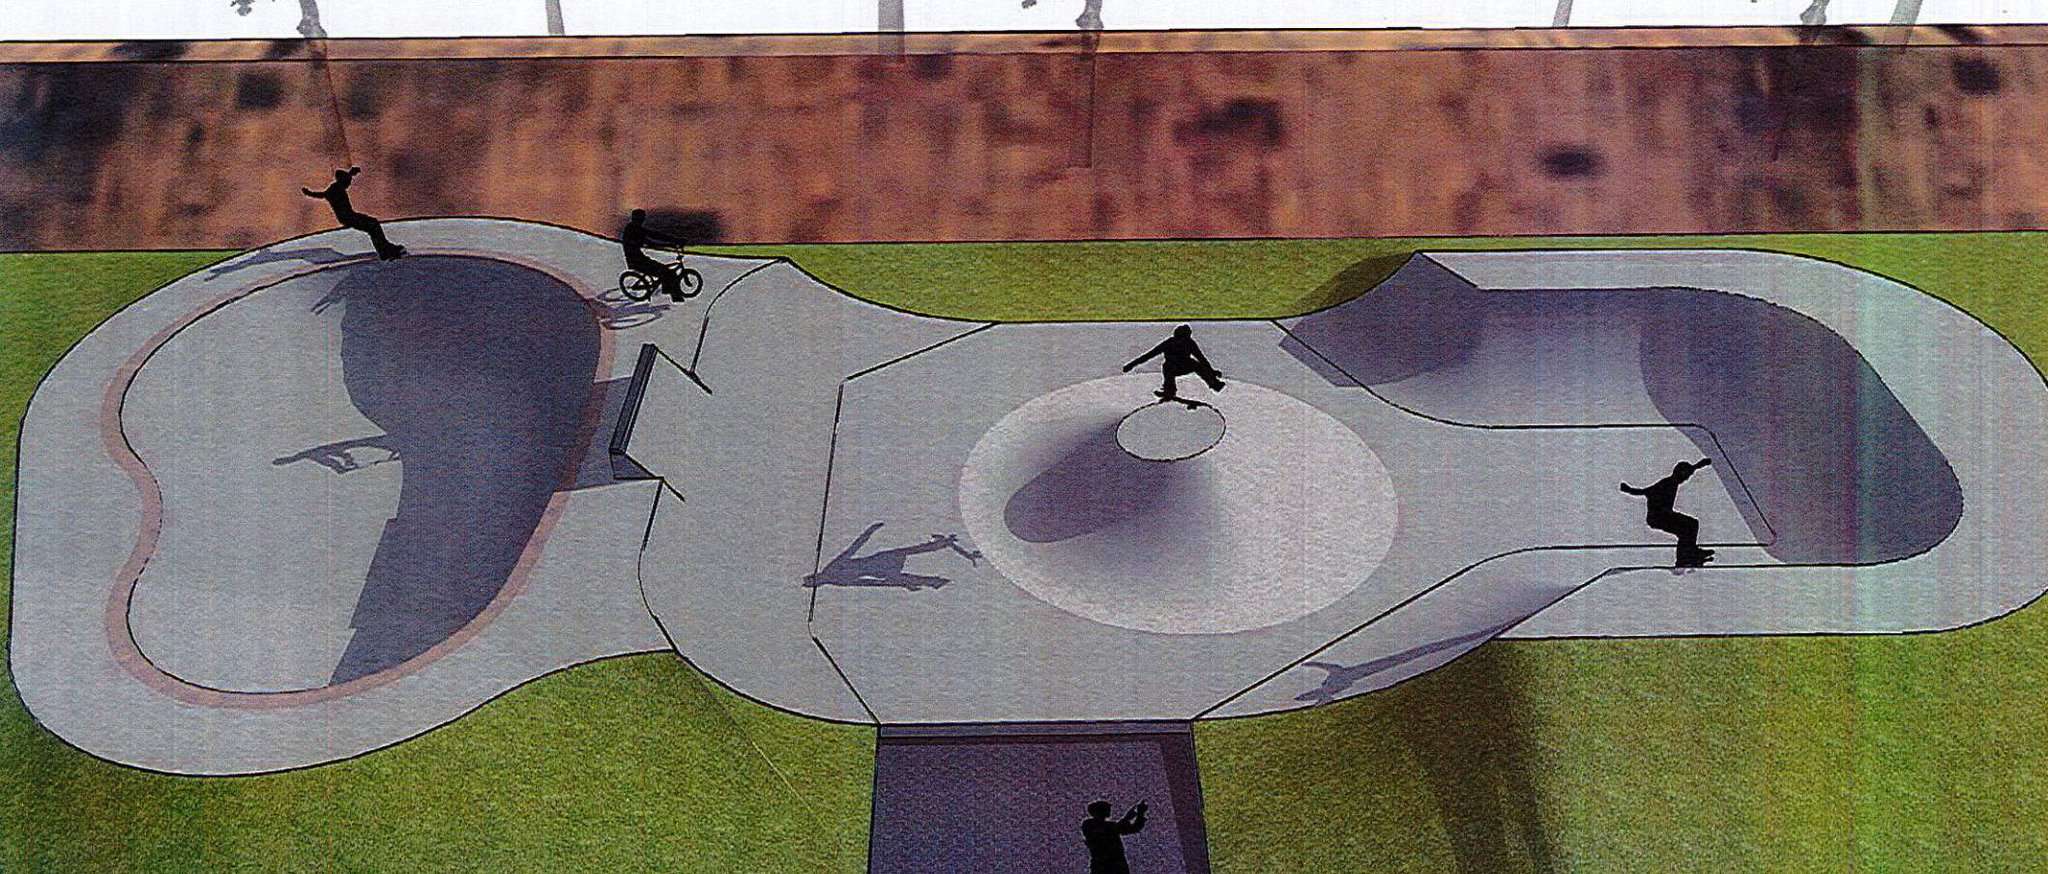 Der neue Skatepark in der Nähe des Rotenburger Bahnhofs soll mit einer Halfpipe, Flow-Elementen und einem Bowl ausgestattet sein. Das zeigt der Entwurf der Firma Skateshapes.